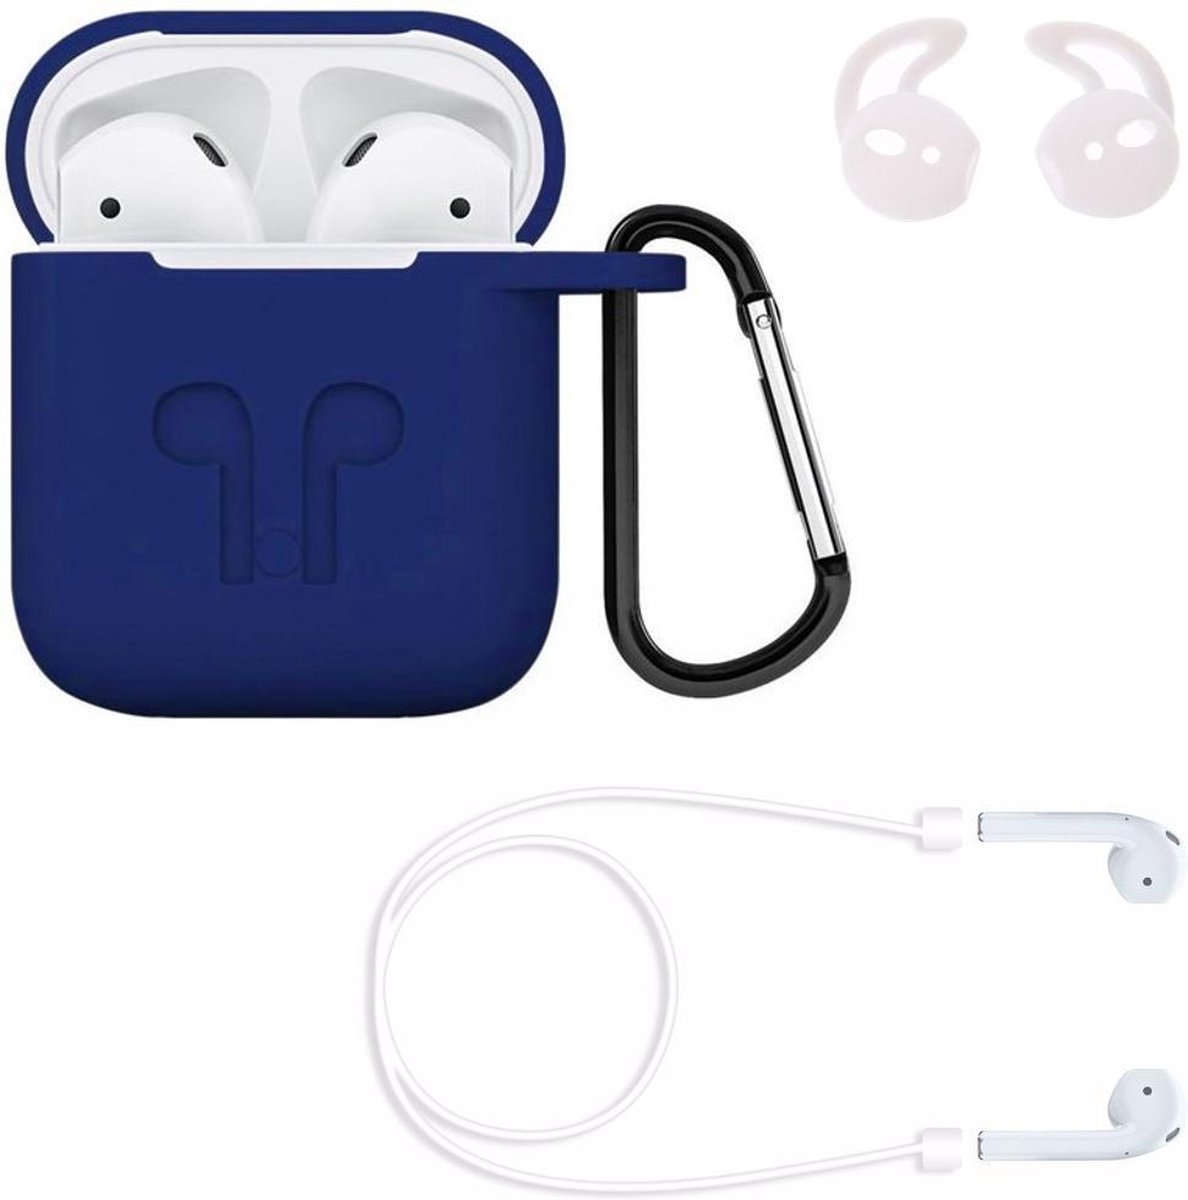 KELERINO. Hoesje geschikt voor Airpods 1 / 2 - 3 in 1 set (Case voor Airpods + strap + earhoox) - Donker Blauw